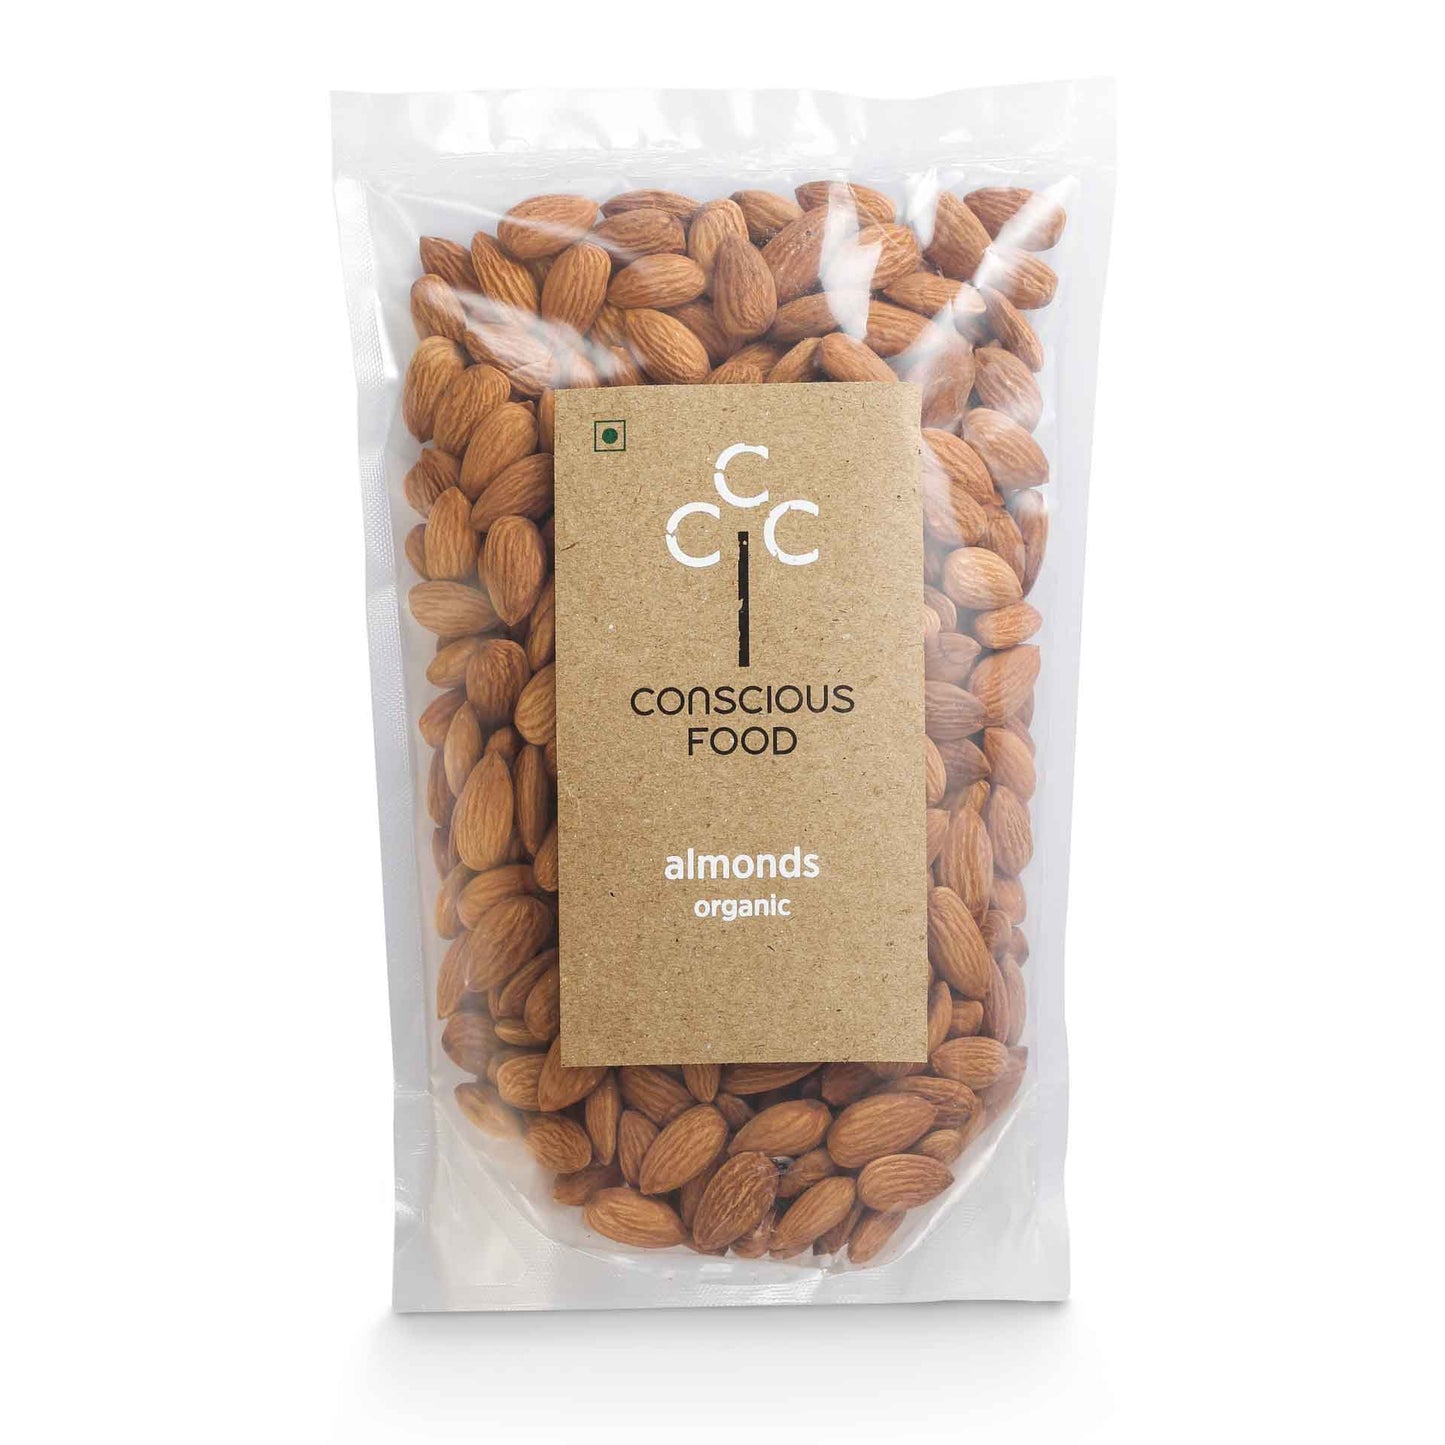 Organic Almonds 250g